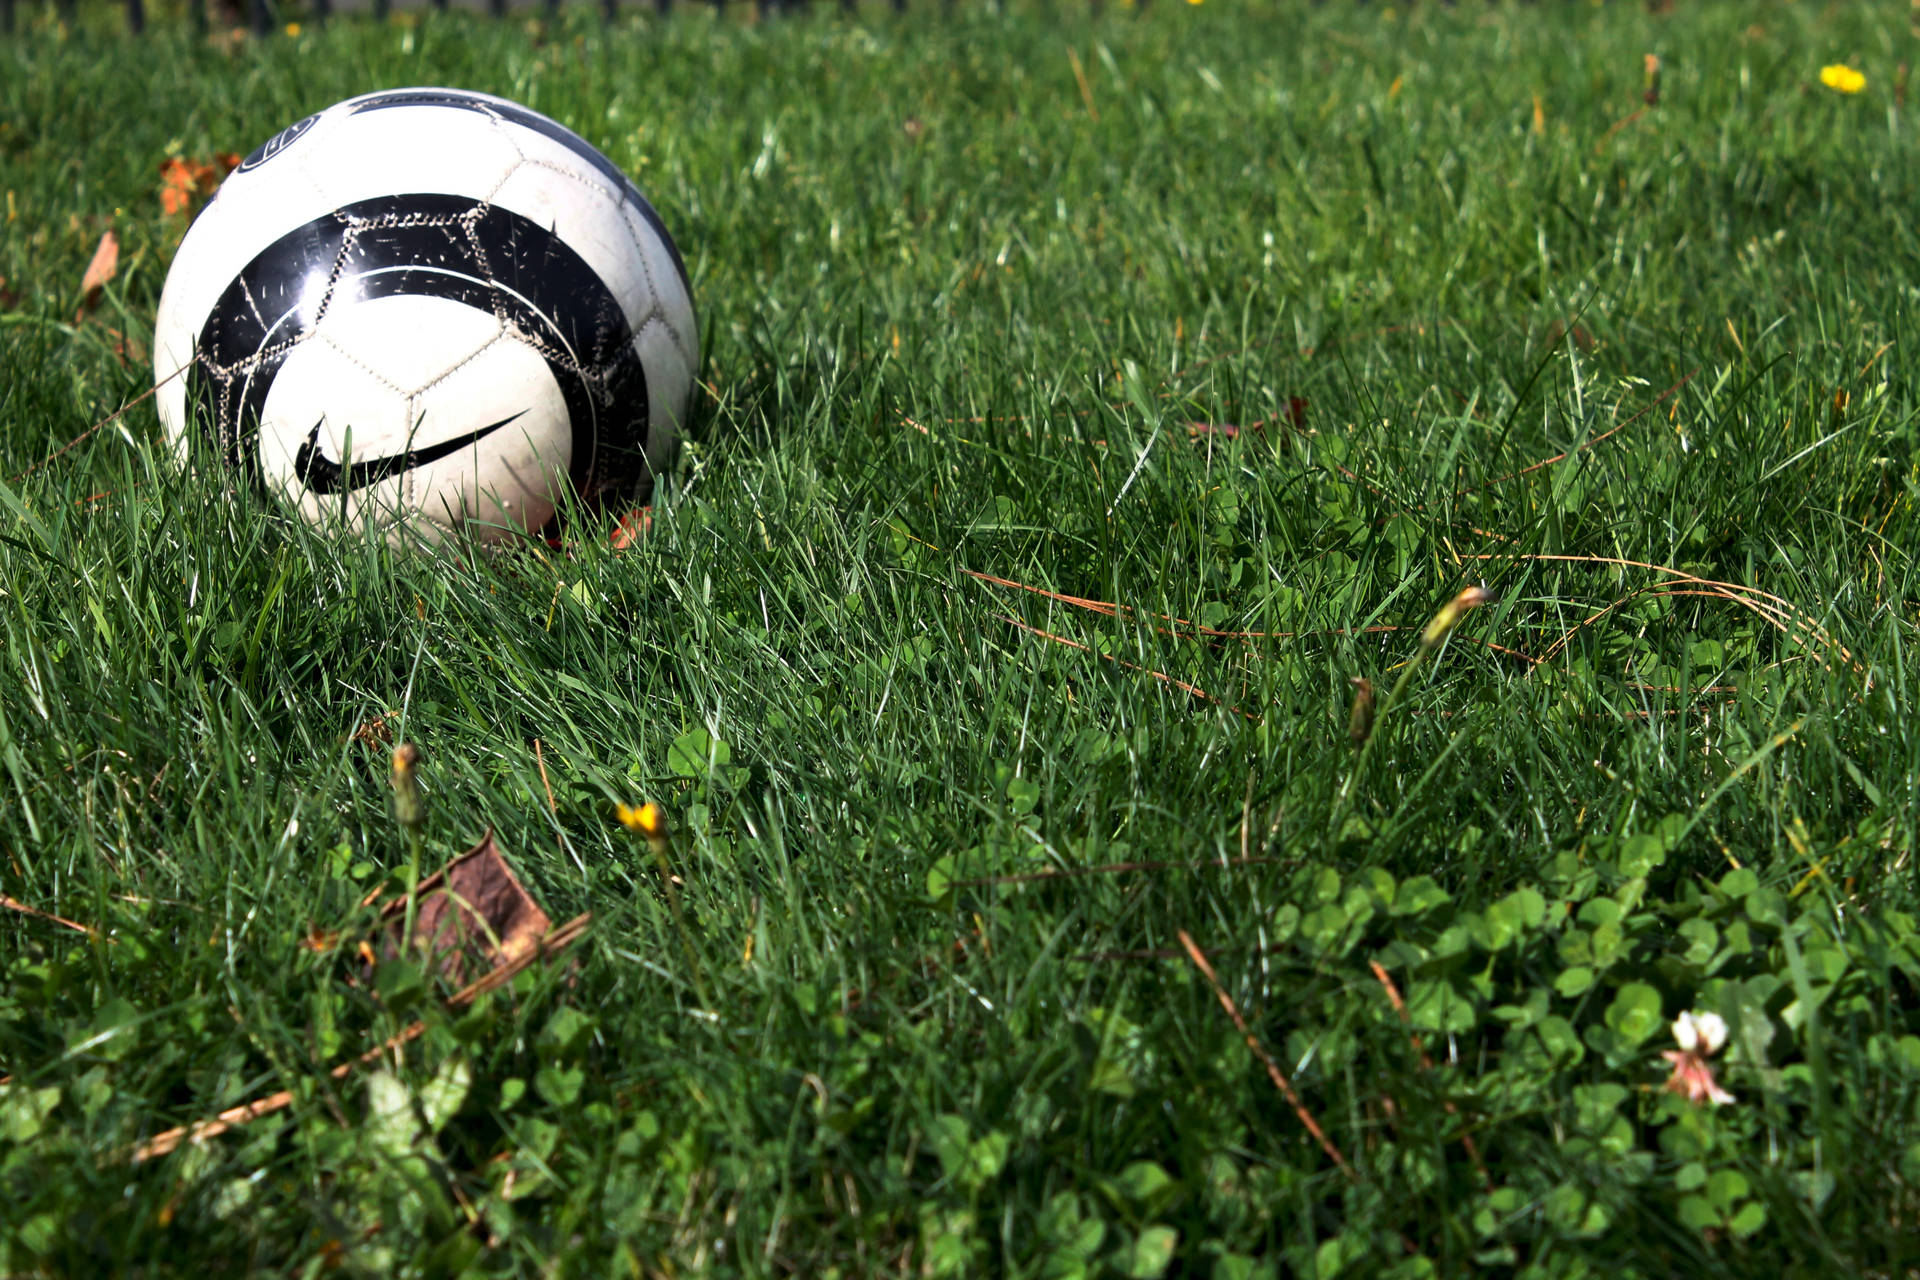 Soccer Ball, Nike, Grass